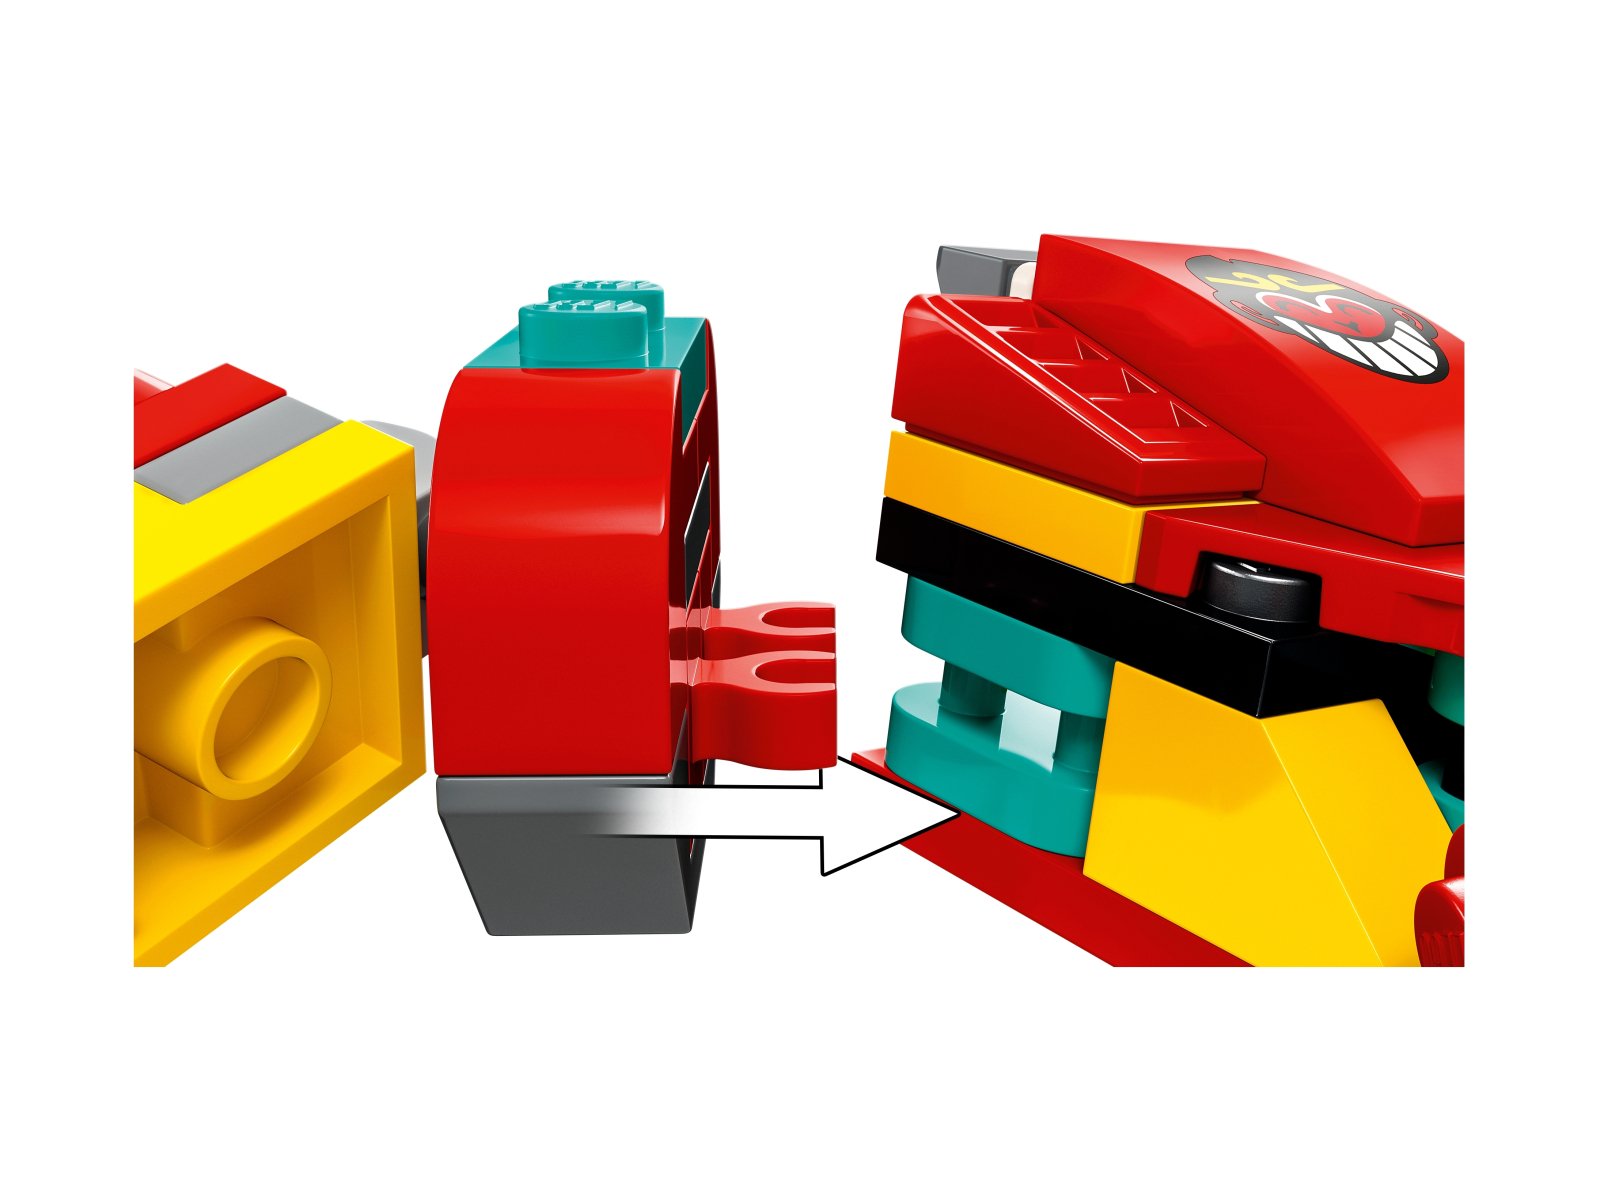 LEGO 80030 Modele z kosturem Monkie Kida